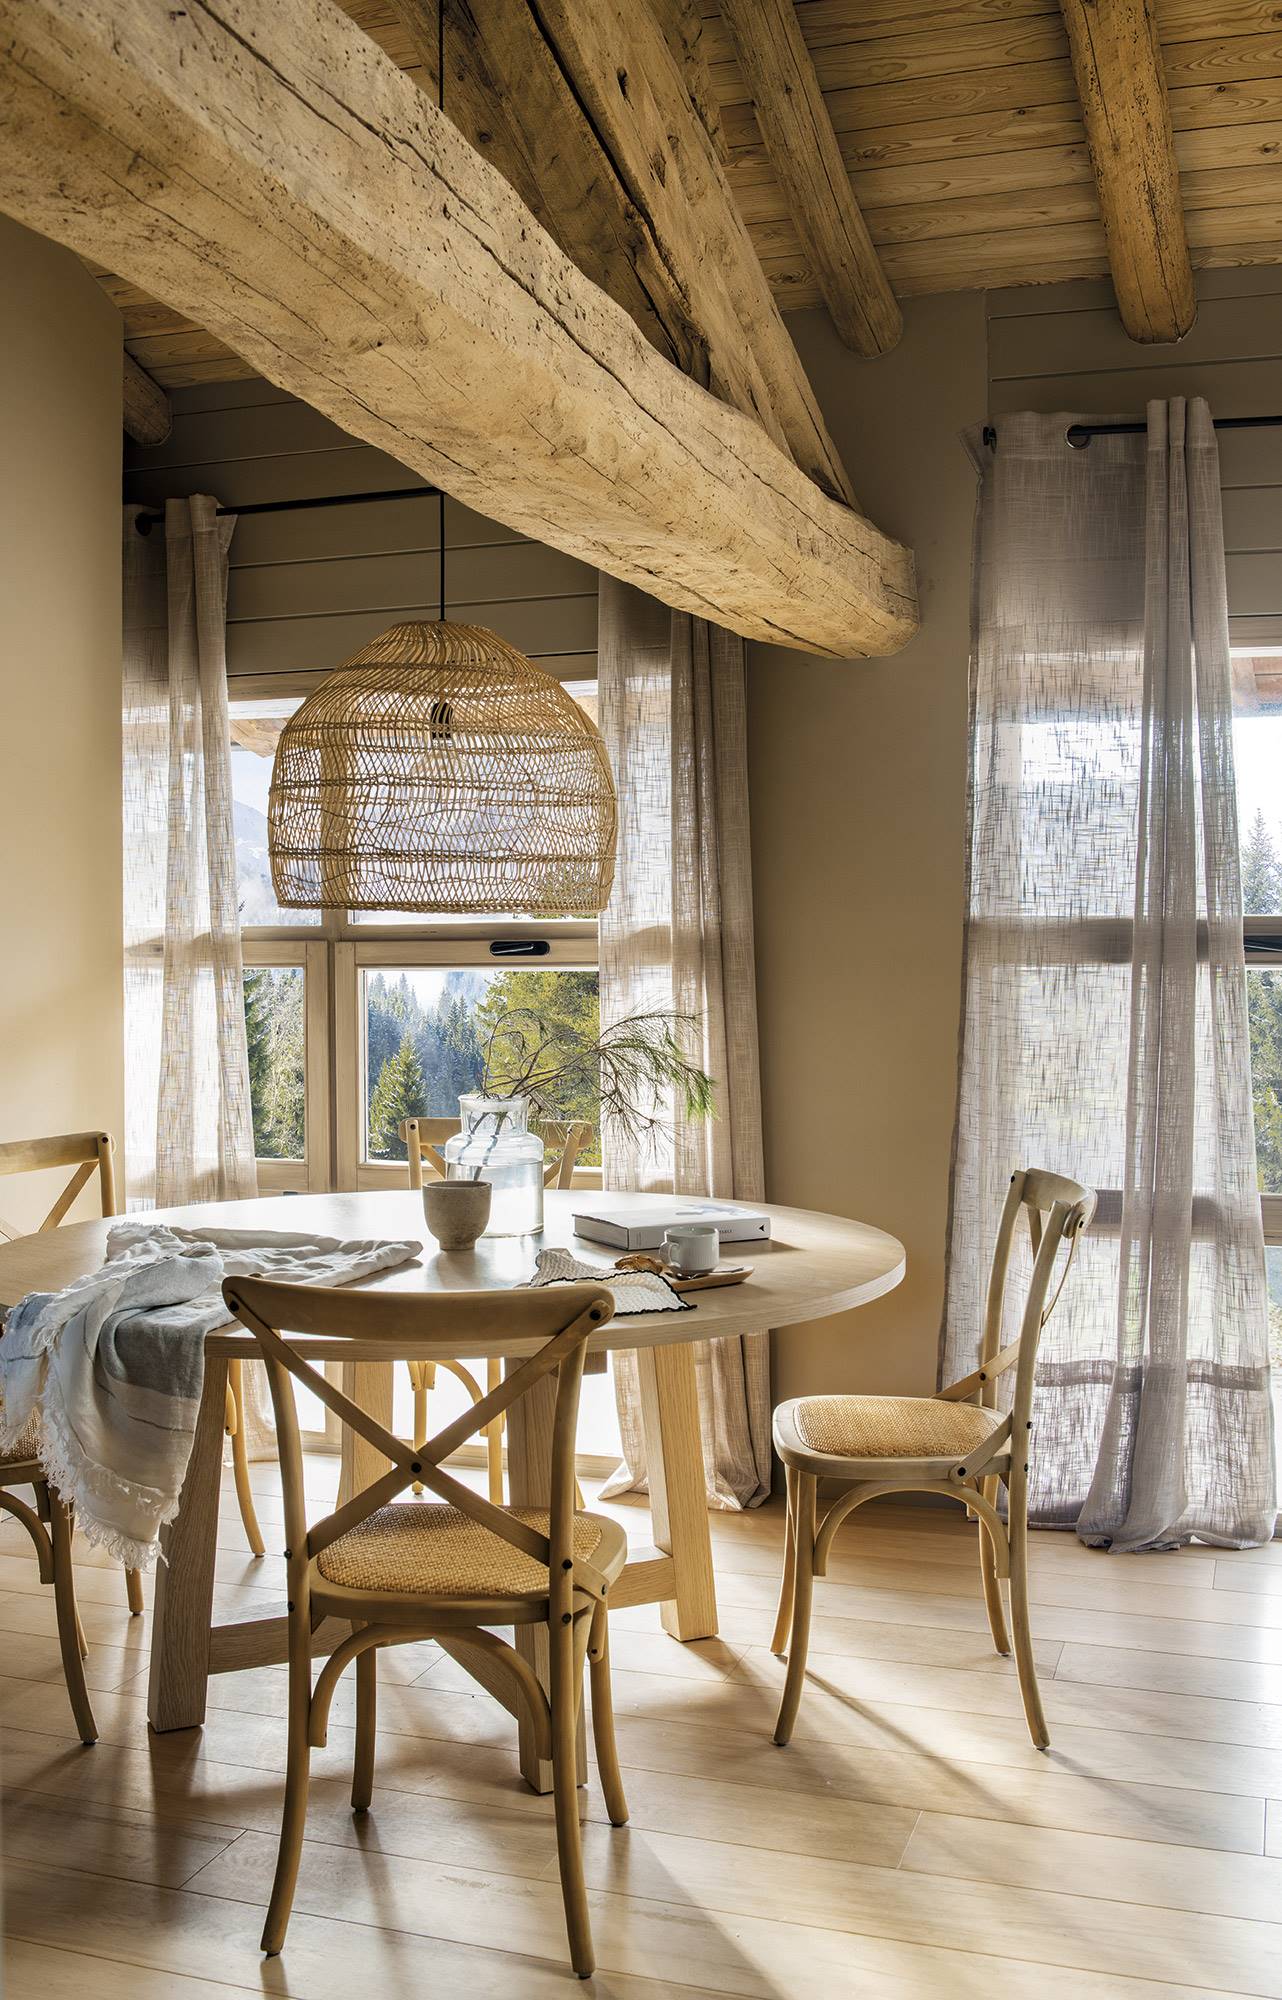 Comedor rústico con mesa redonda con sillas de madera y vigas en el techo.